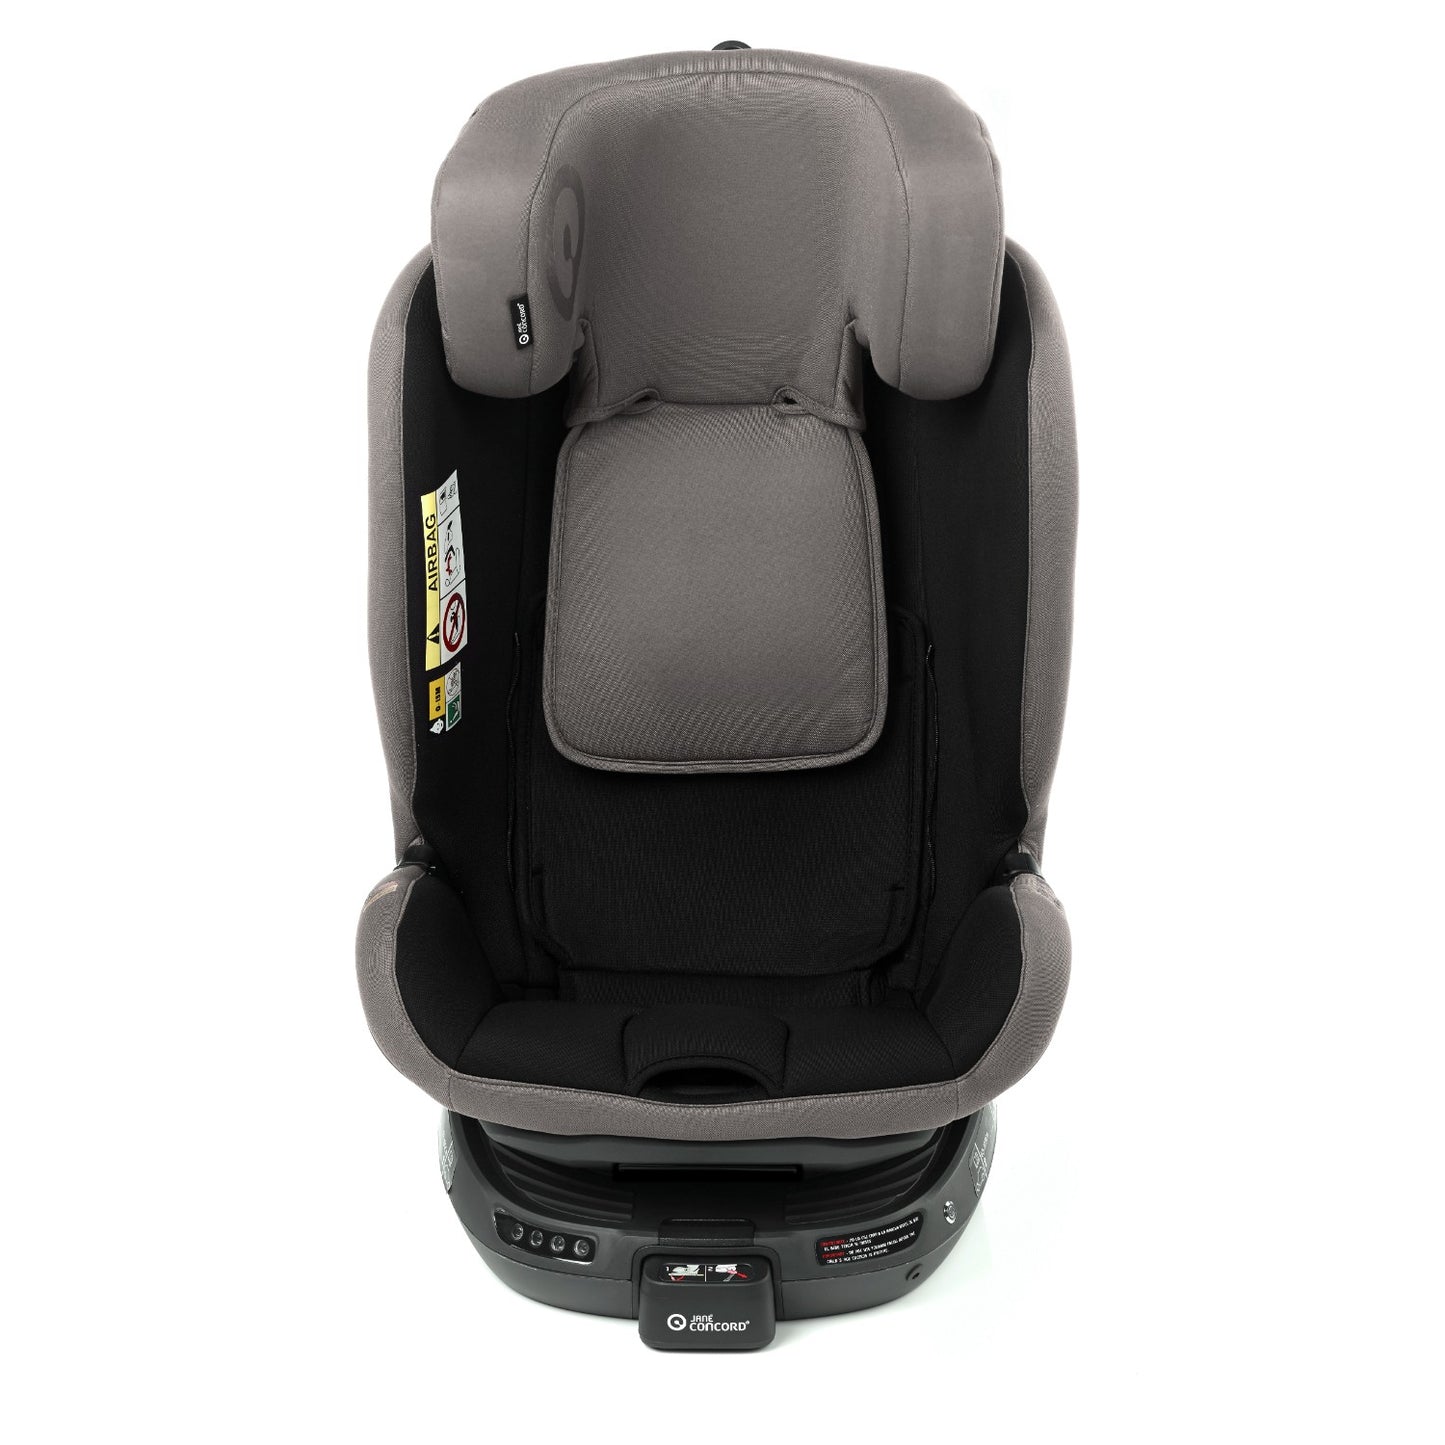 Jané iTourer 360° Rotation Car Seat (0-6yrs)